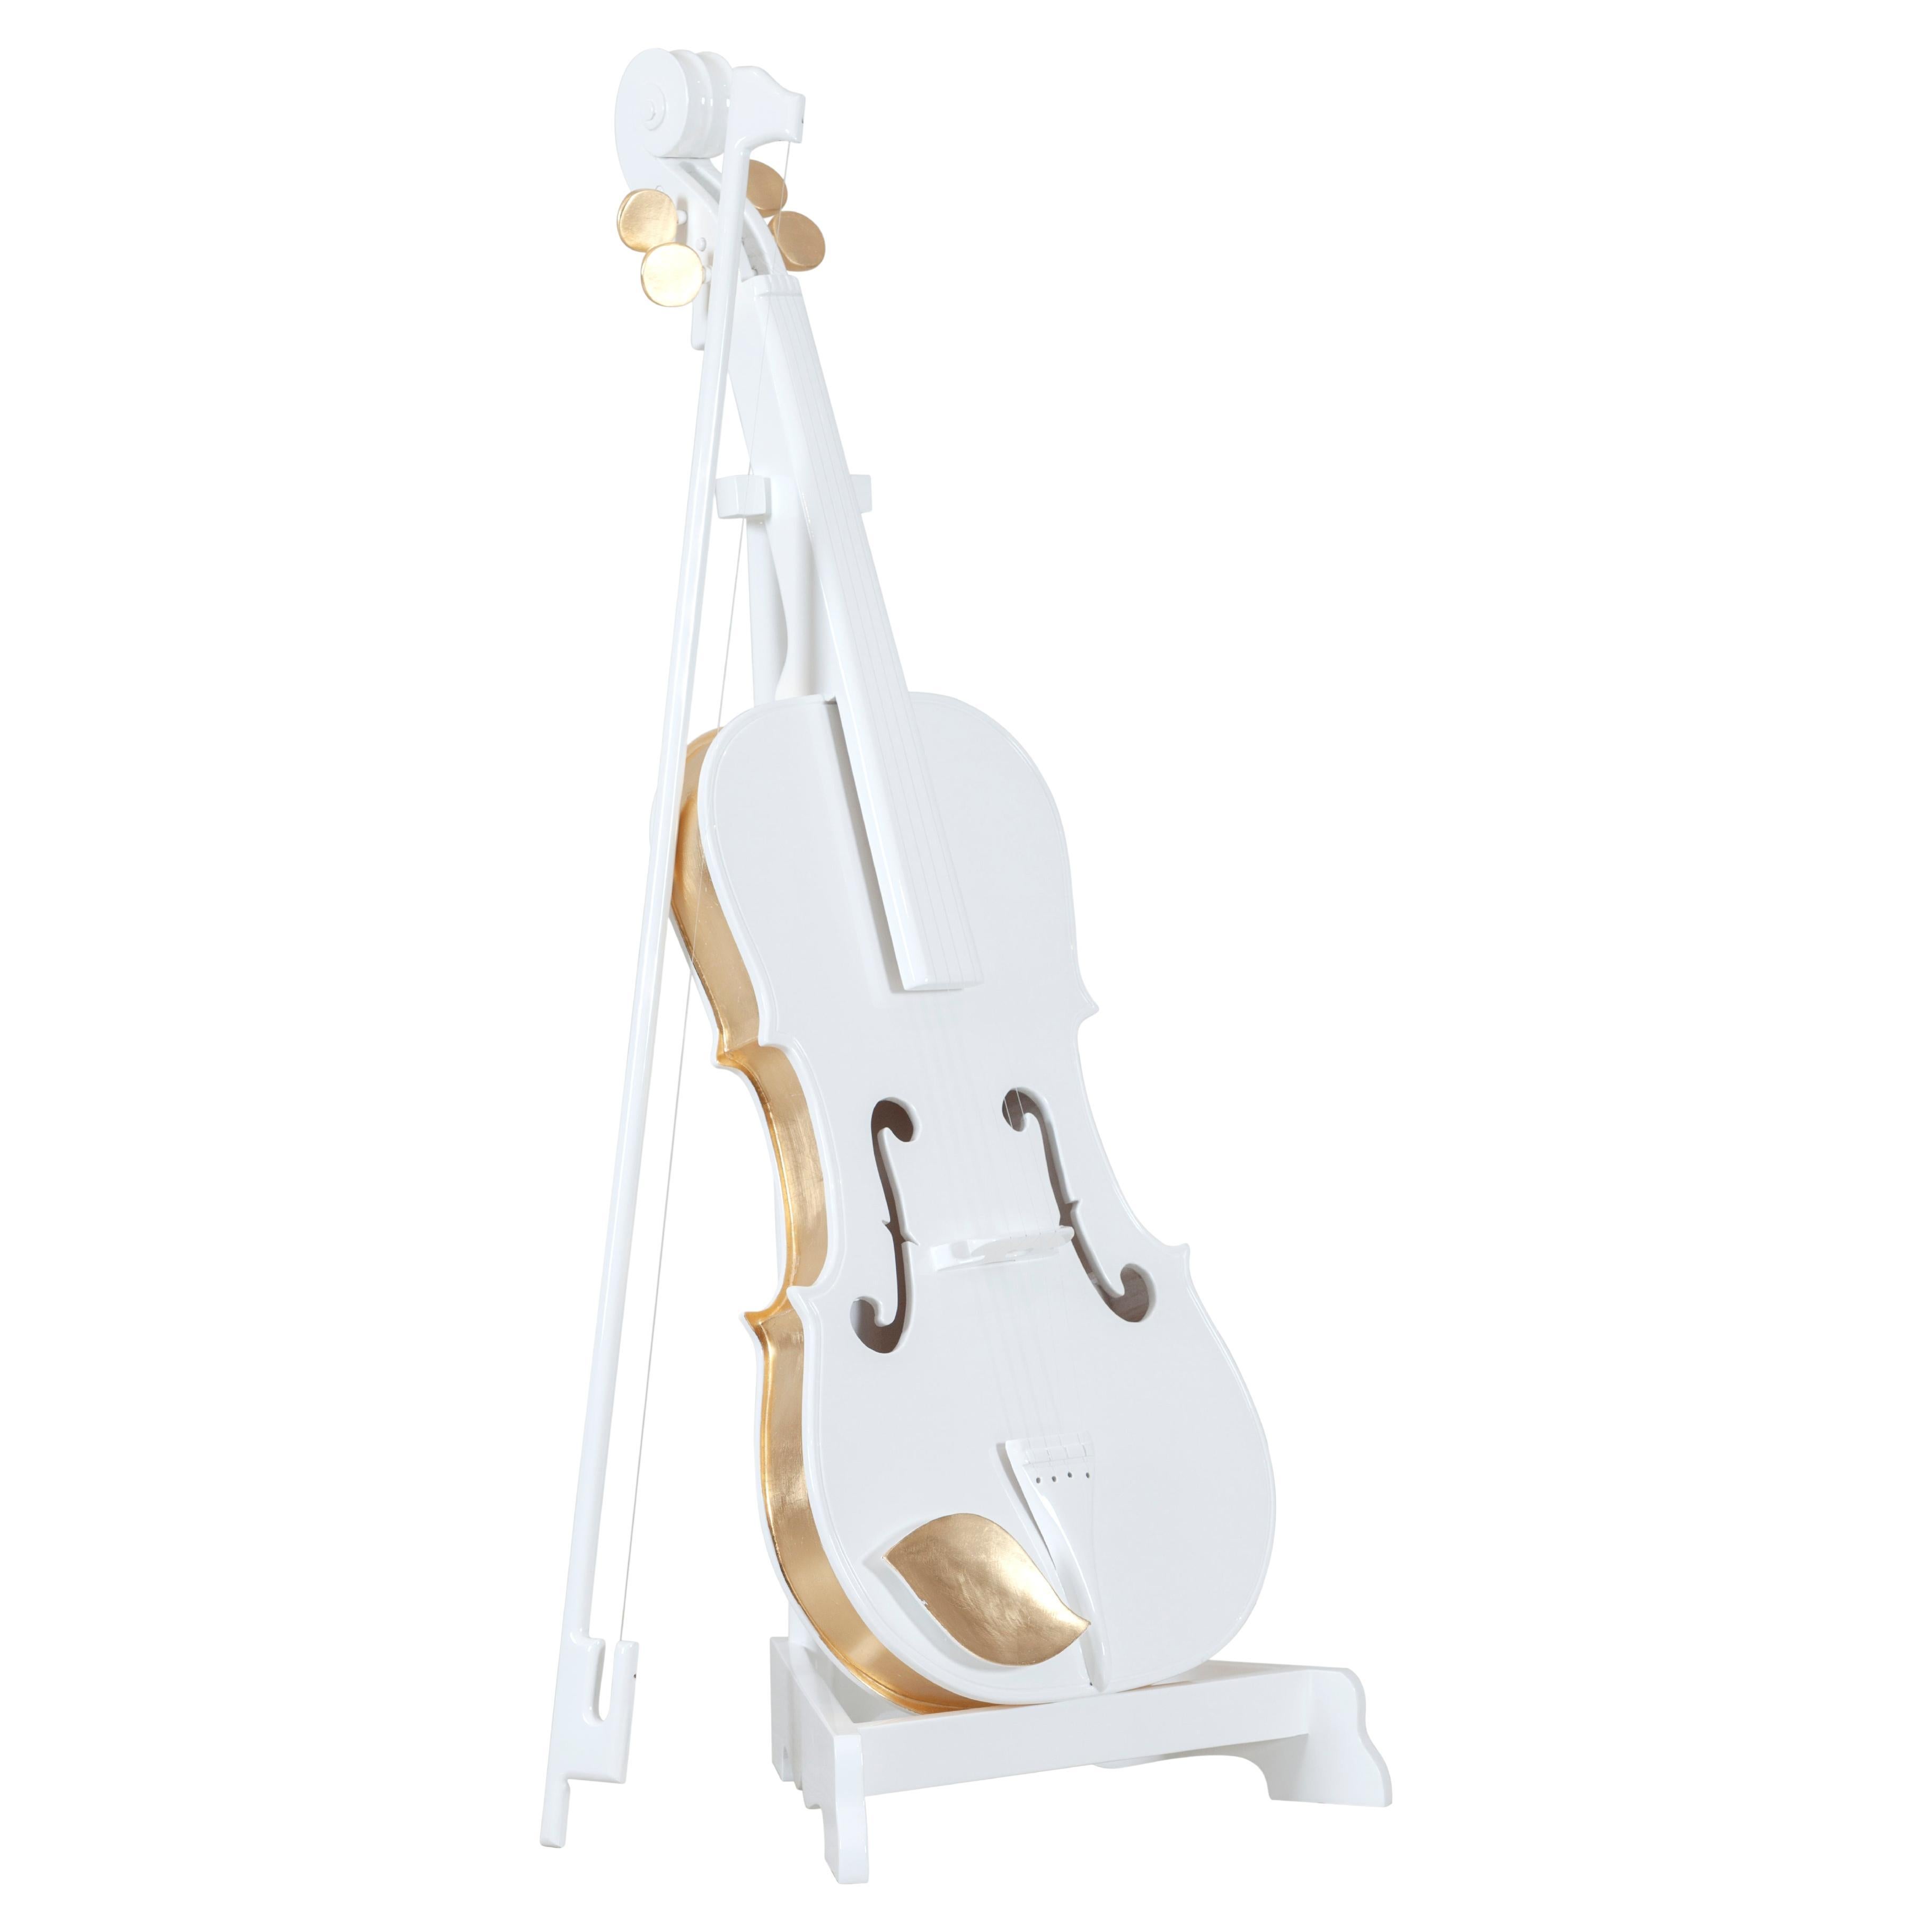 Sculpture décorative de Brahms Cello faite à la main au Portugal par Lusitanus Home